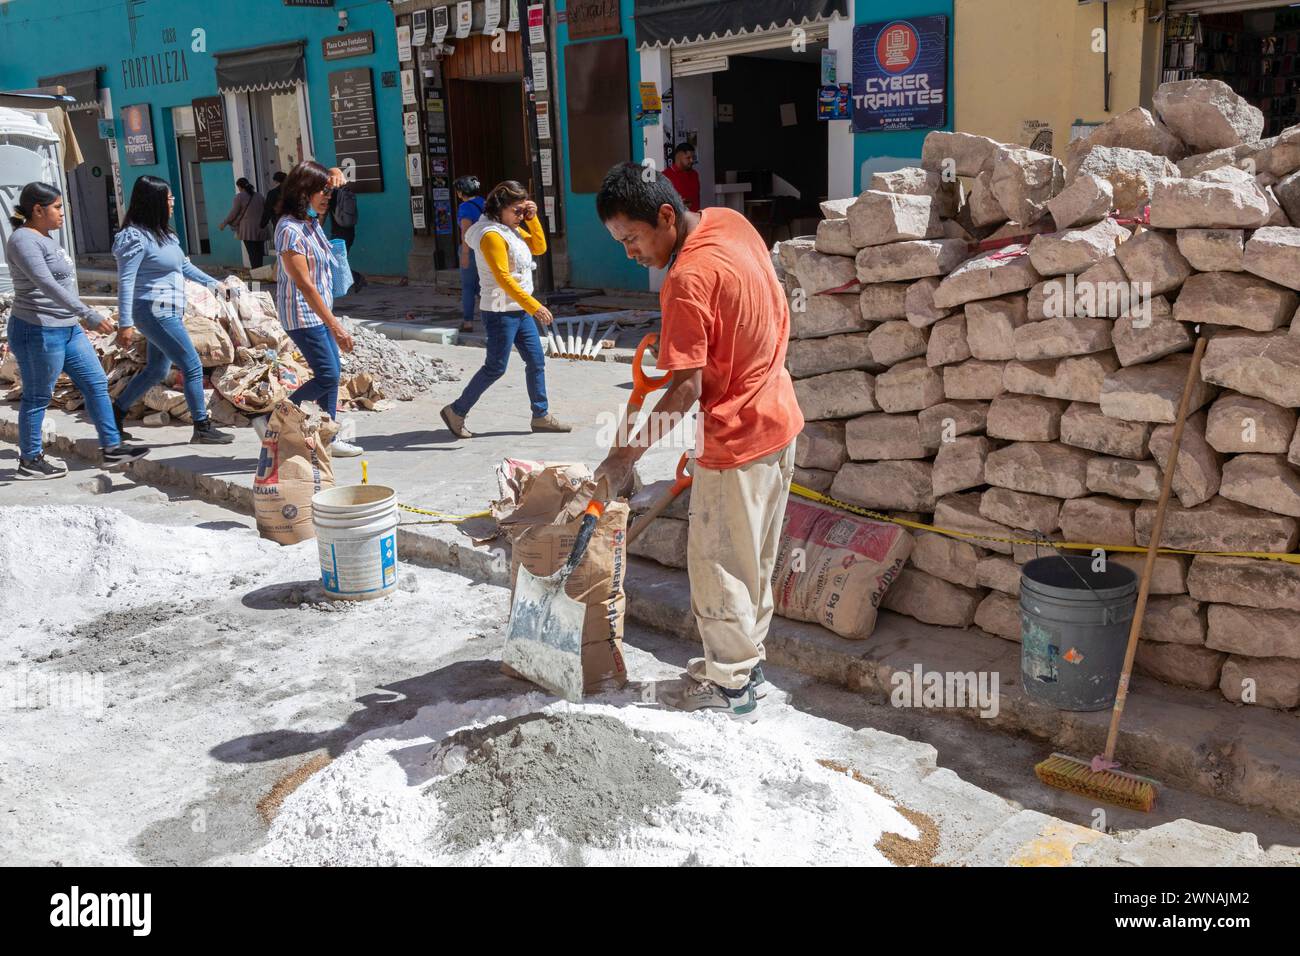 Oaxaca, México - Trabajadores reconstruyen la calle Carlos María Bustamante en el centro de la ciudad de Oaxaca. La mayor parte del trabajo se realiza a mano. Foto de stock